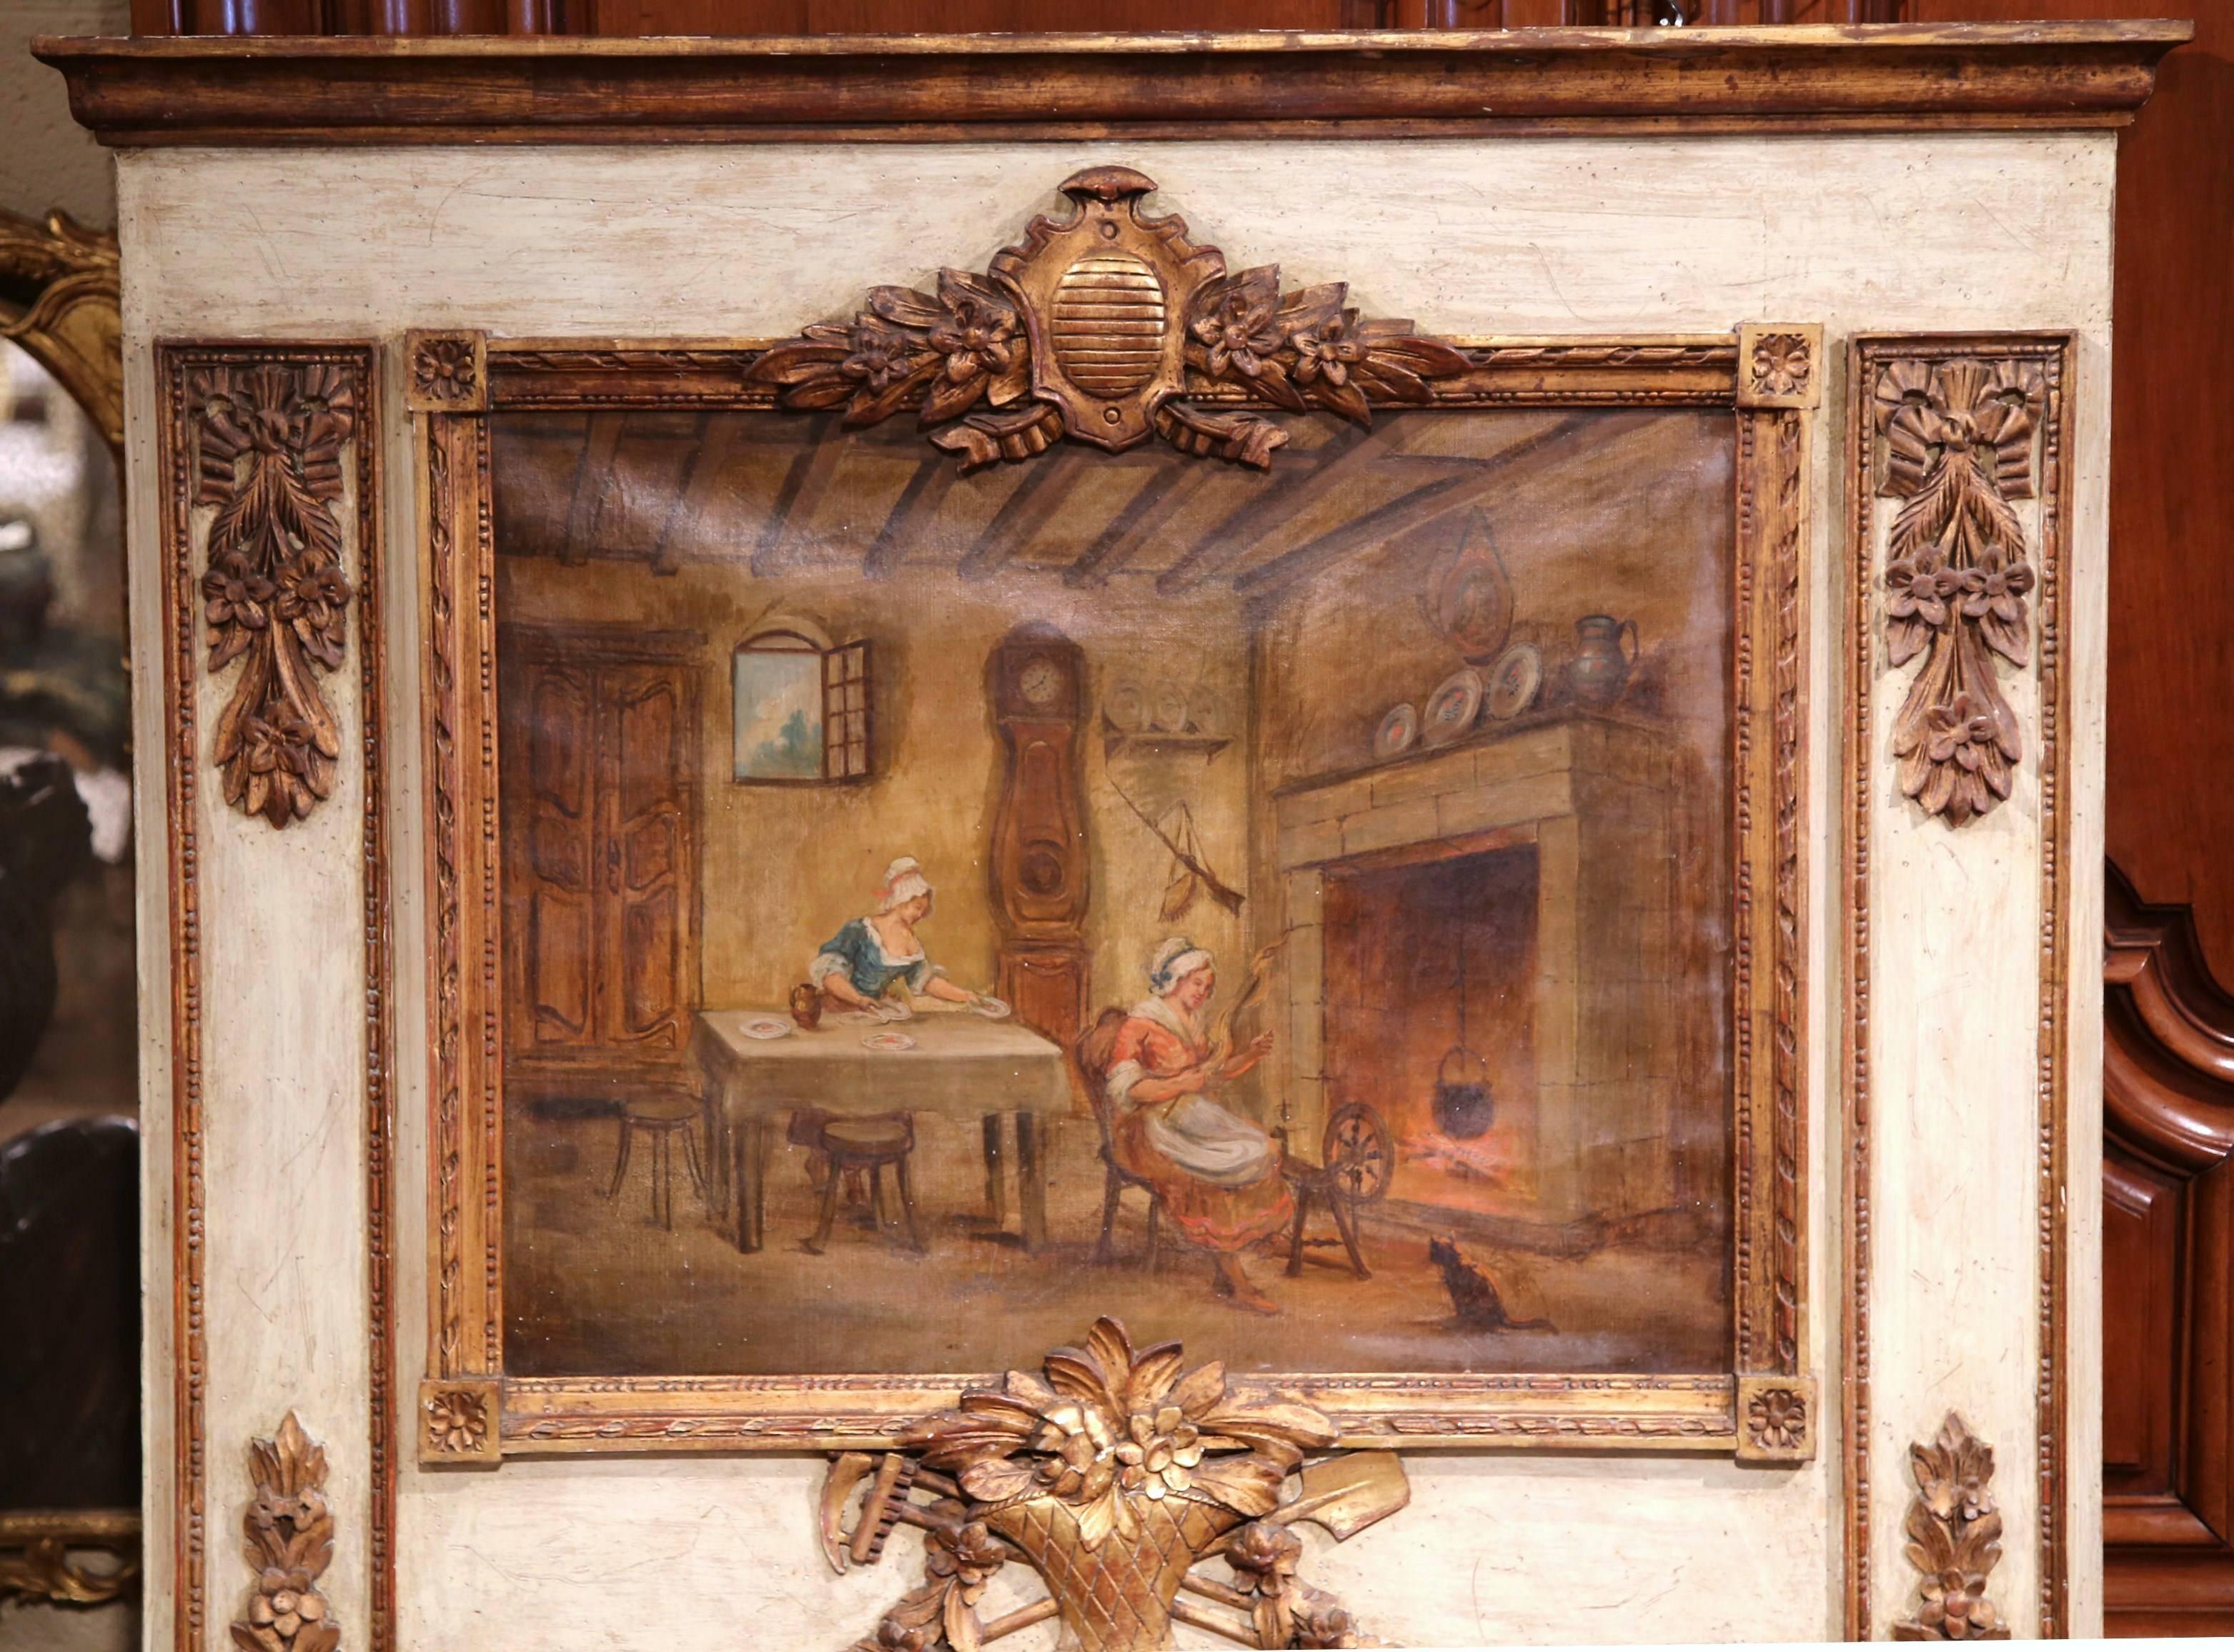 Dieses elegante, geschnitzte antike Trumeau wurde um 1880 in Frankreich hergestellt. Die handgemalte Leinwand zeigt eine Innenraumszene mit zwei Frauen bei der Arbeit in einem typisch französischen Landhausstil, einer traditionellen großen Standuhr,